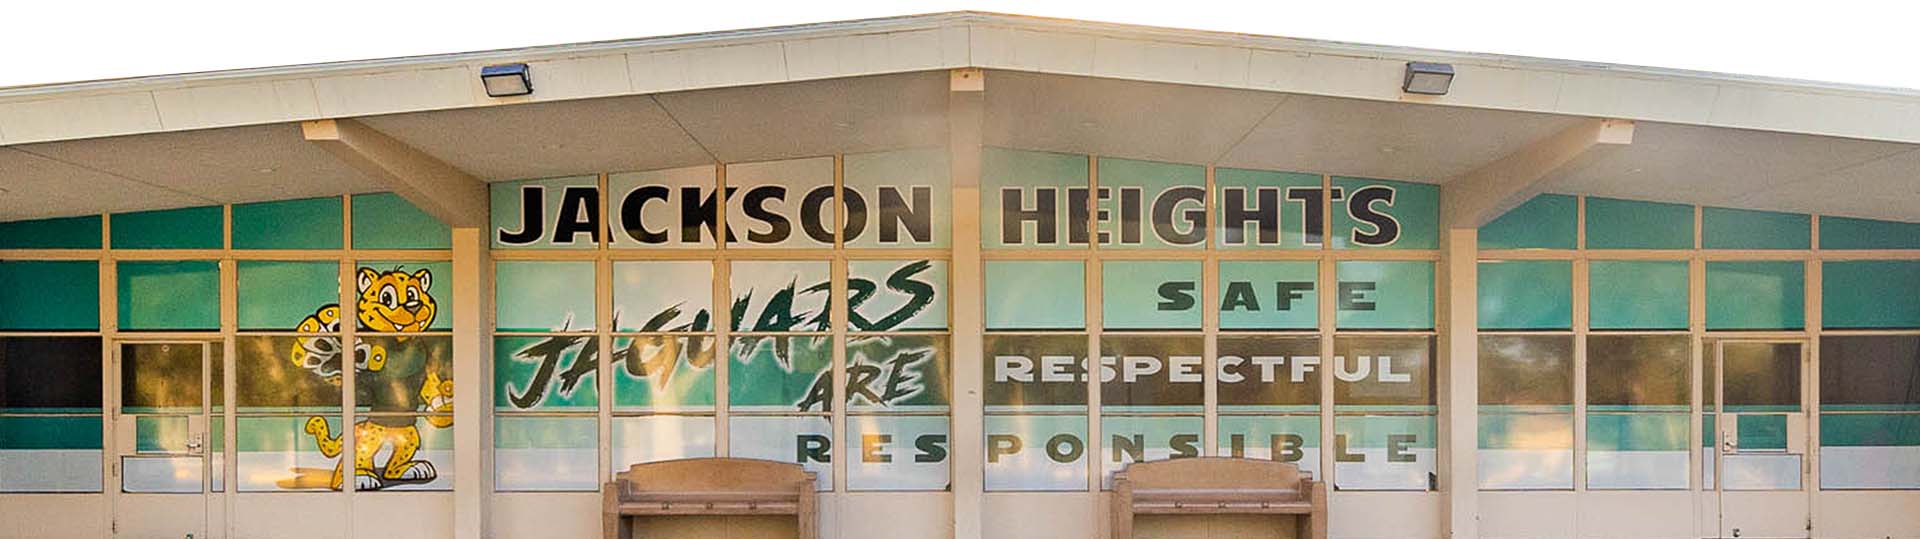 Jackson Heights Jaguars school building